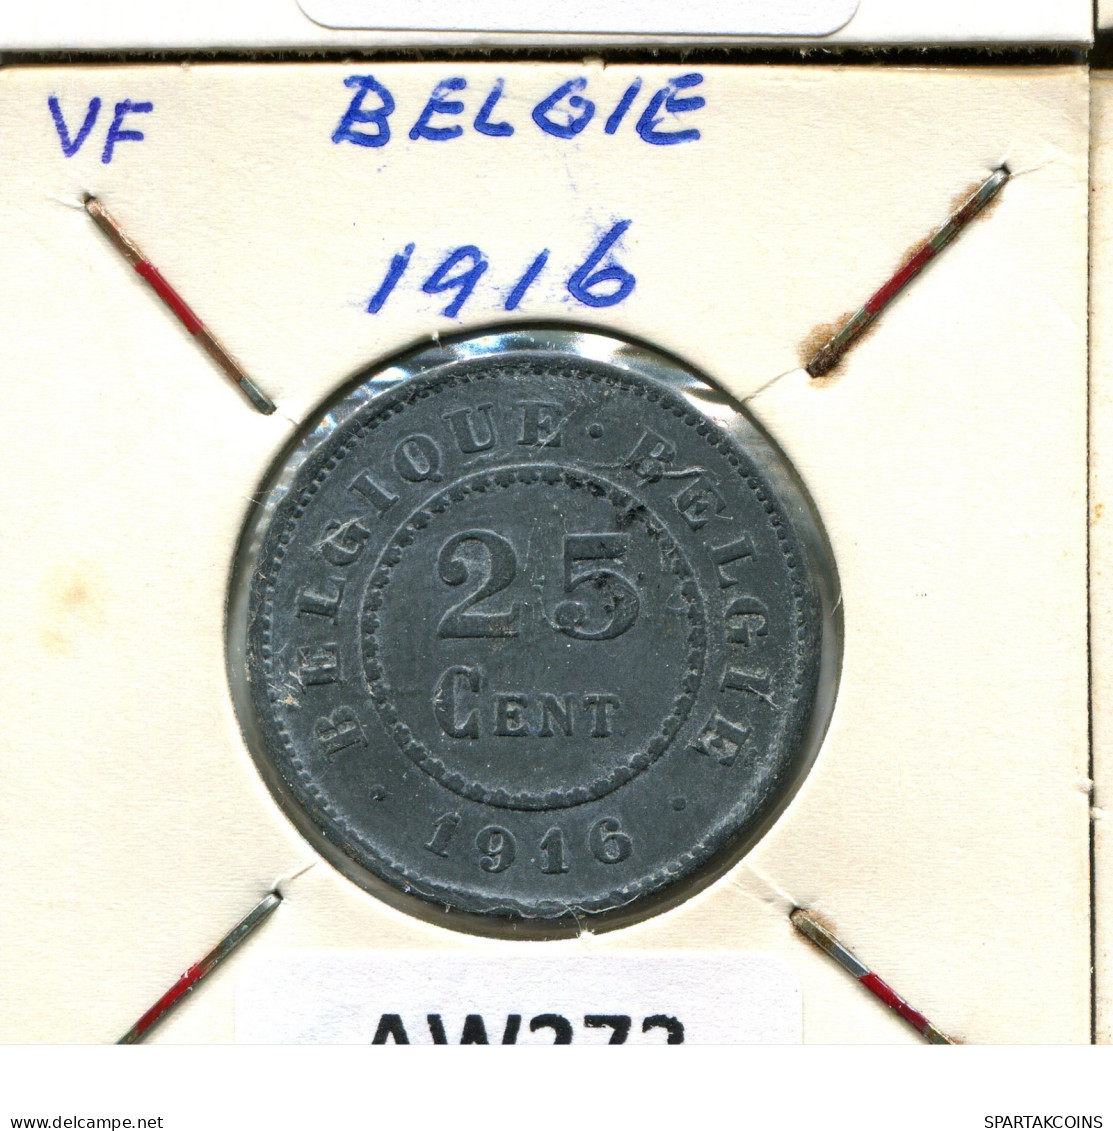 25 CENTIMES 1916 BELGIQUE-BELGIE BELGIEN BELGIUM Münze #AW272.D.A - 25 Cents